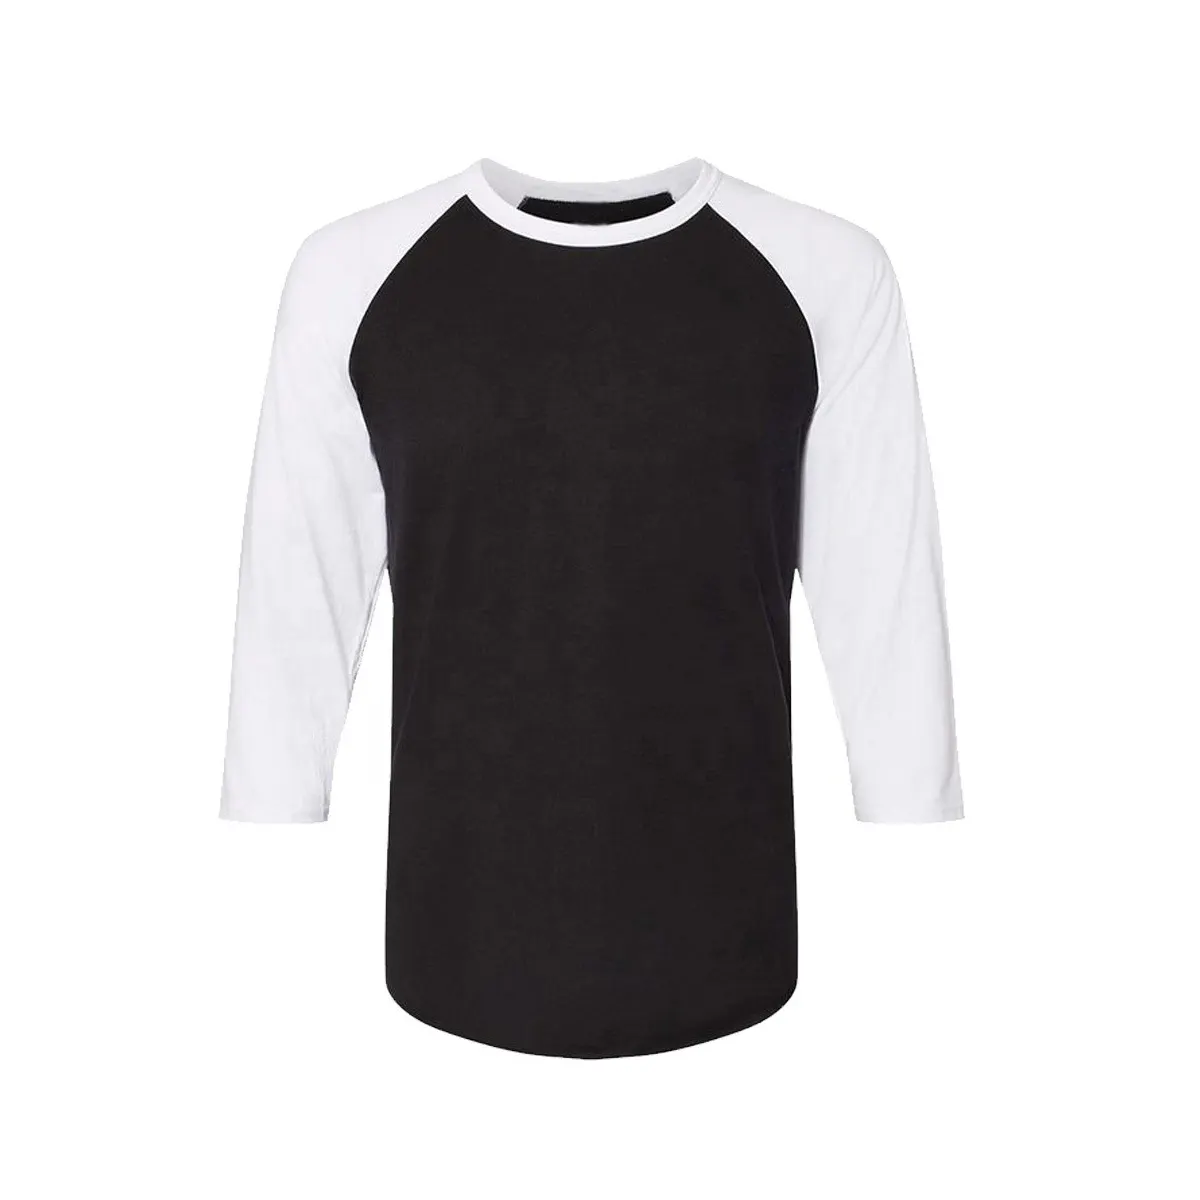 Nova Chegada Personalizado 3/4 manga baseball t shirt Atacado Baixo Preço Baixo MOQ Melhor Qualidade Tecido